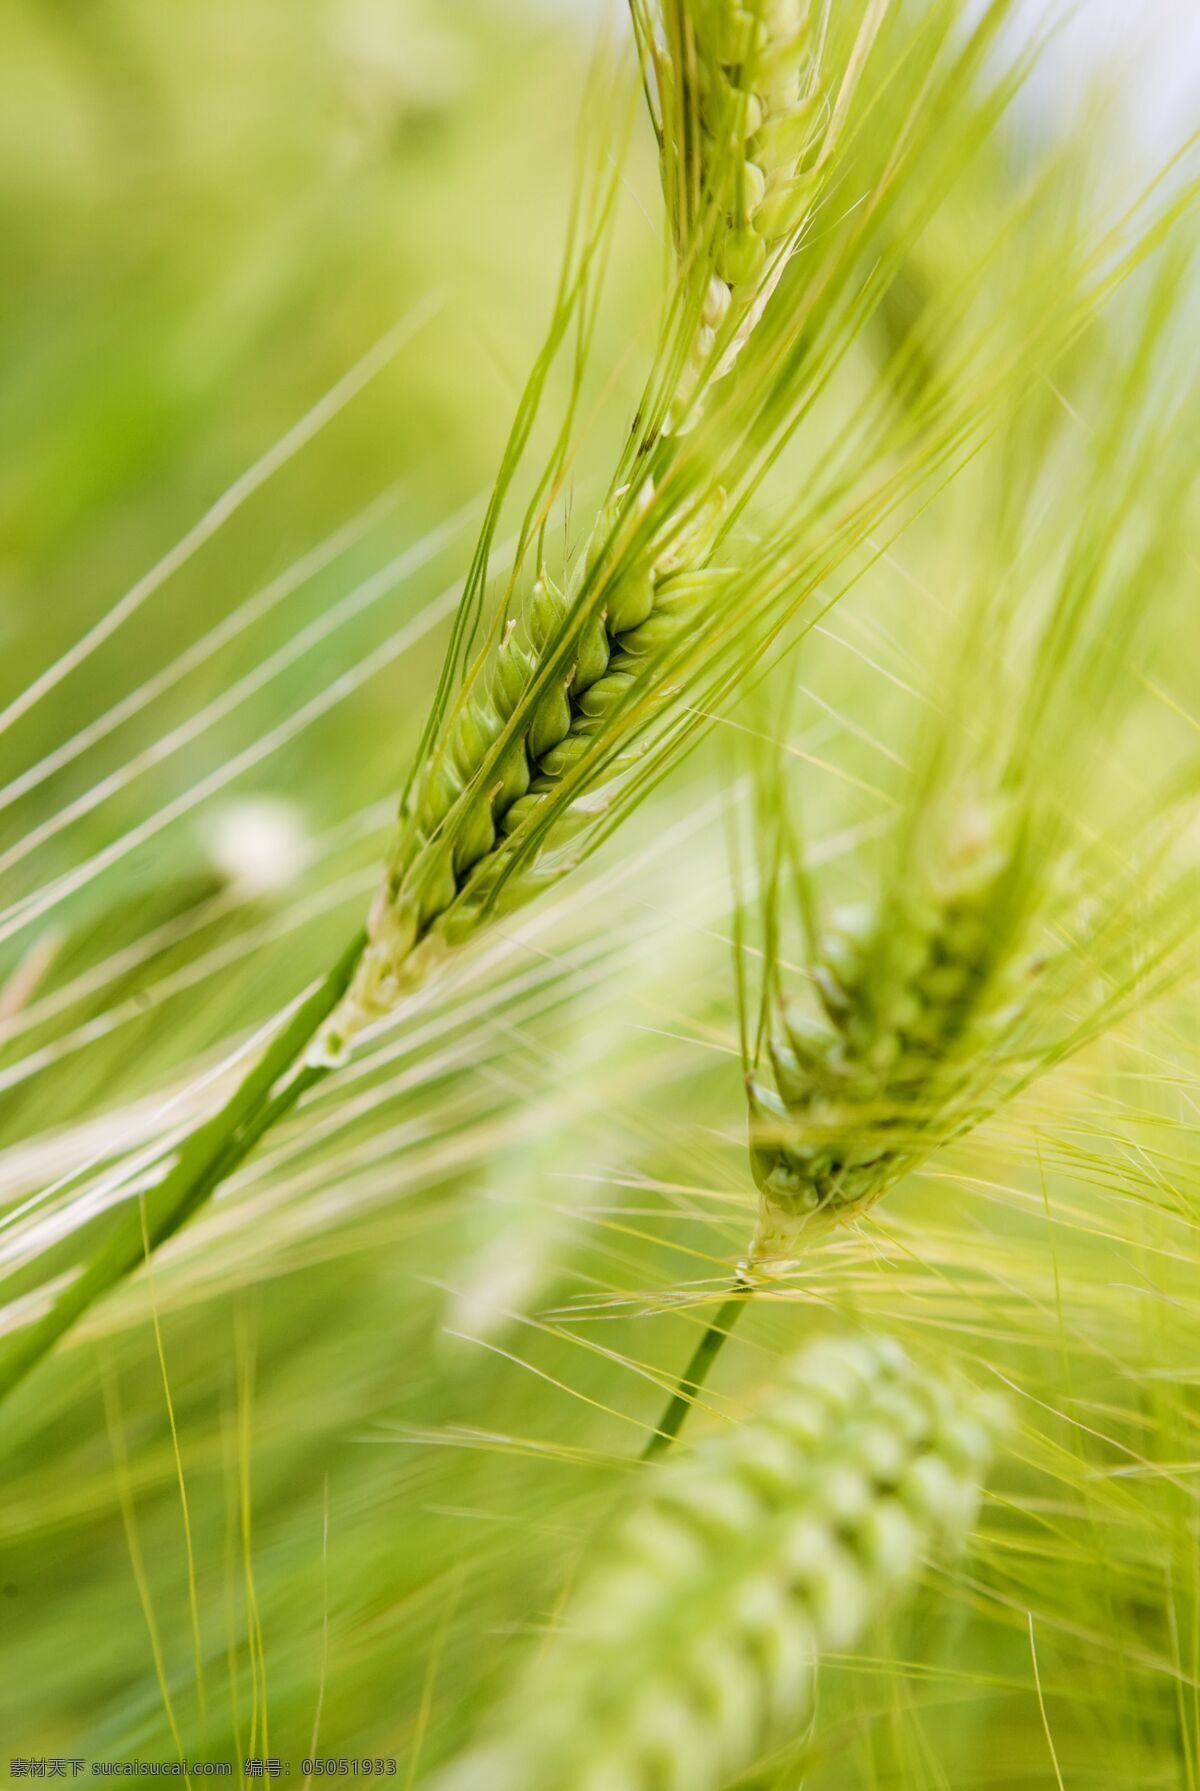 丰收 小麦 麦子 麦穗 麦田 成熟的麦子 农作物 收获 高清图片 山水风景 风景图片